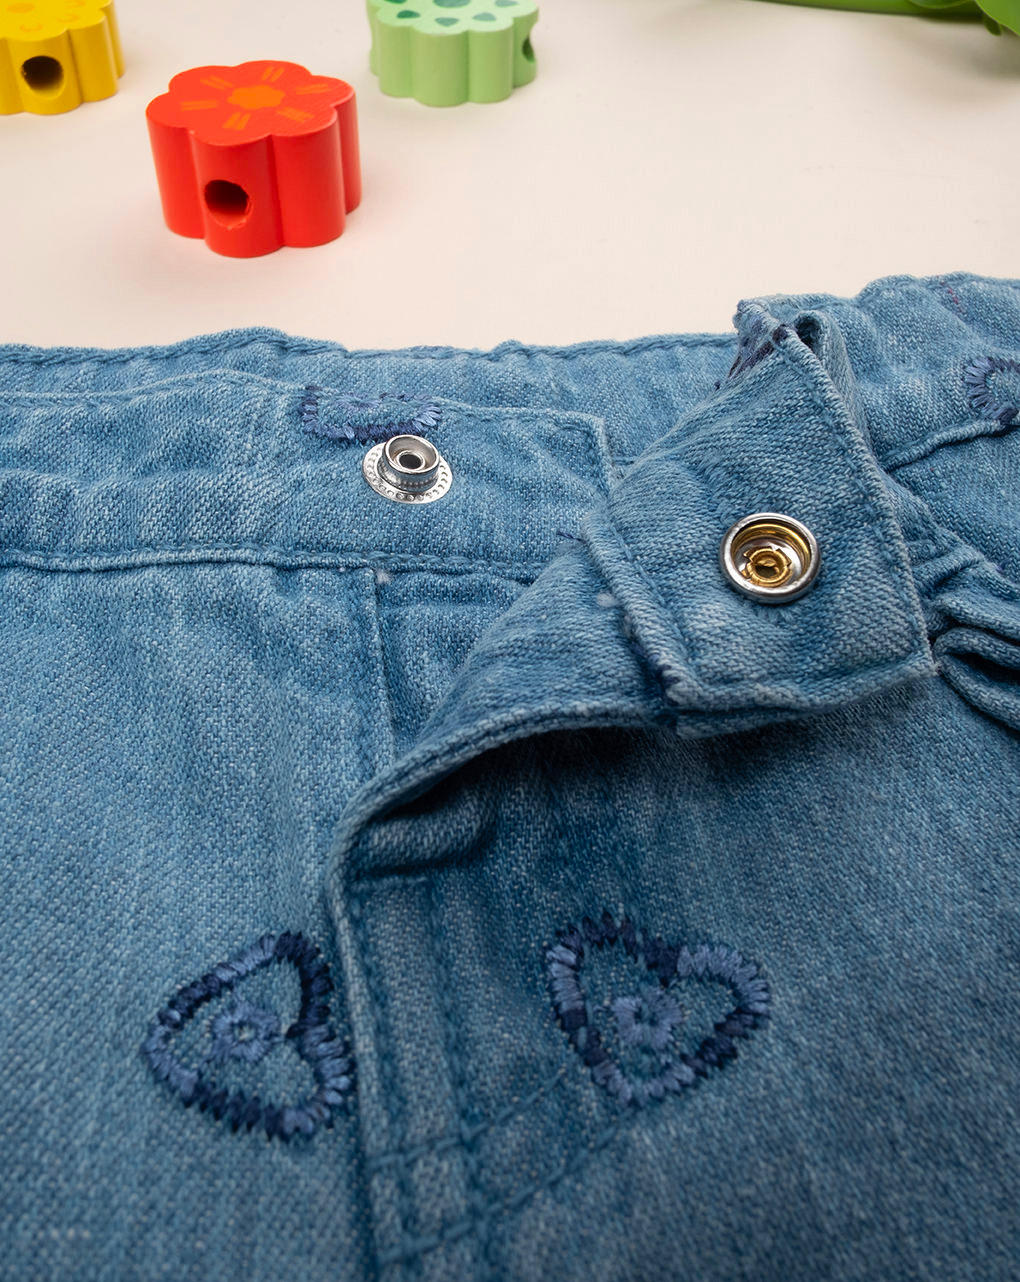 βρεφικό τζιν παντελόνι μπλε με καρδούλες για κορίτσι - Prénatal